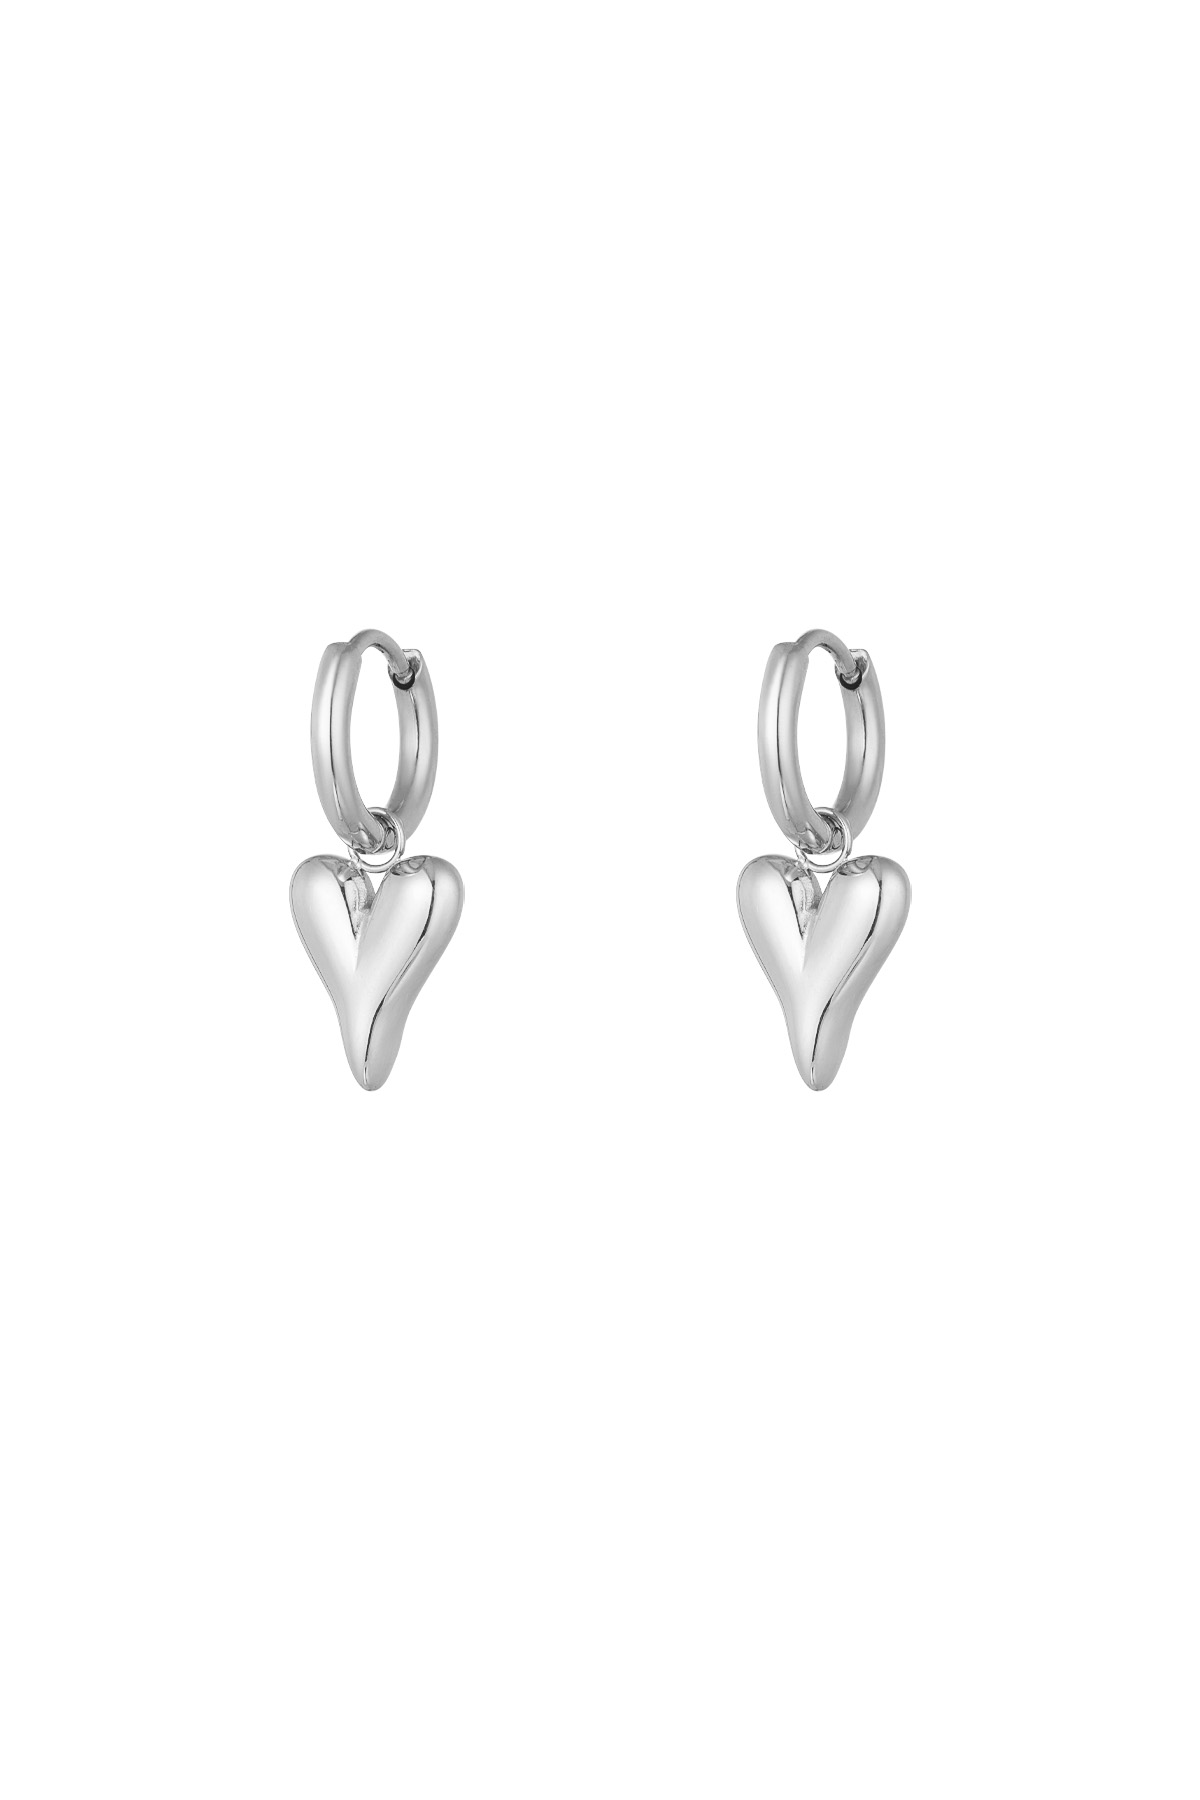 Stainless Steel Heart-shaped Earrings - Zilber